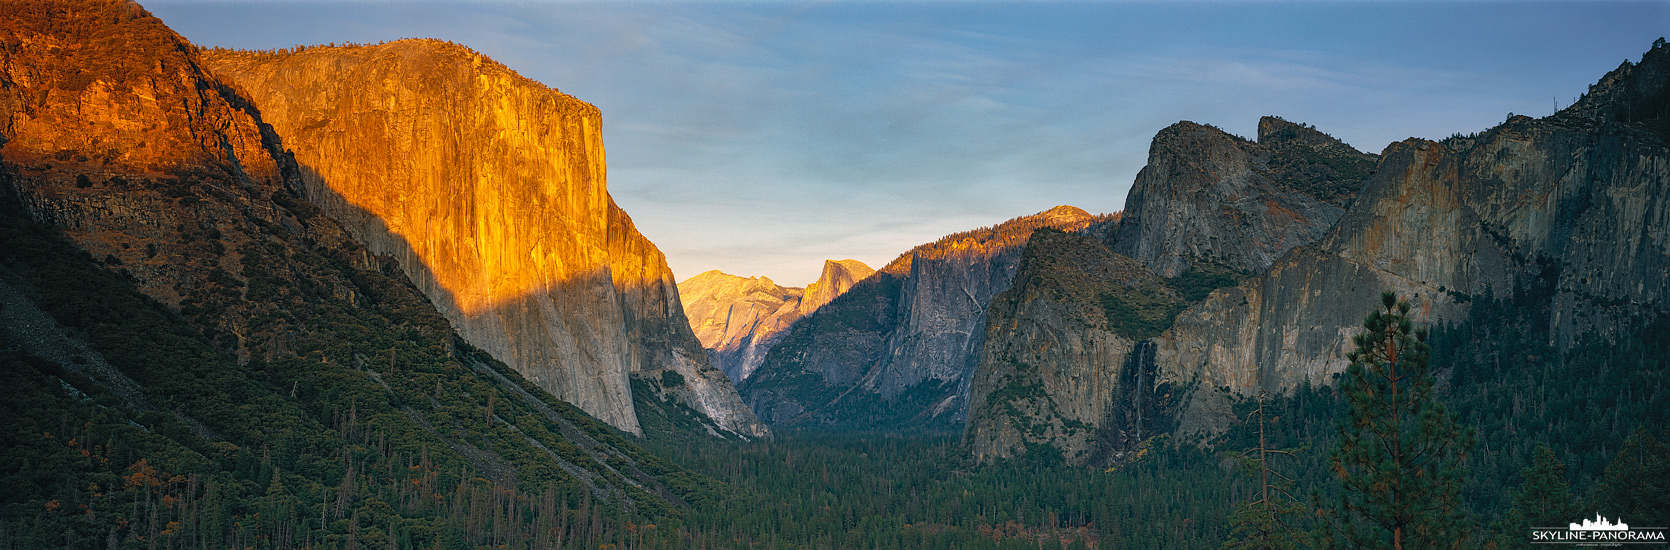 Yosemite National Park - US West Coast (p_01148)